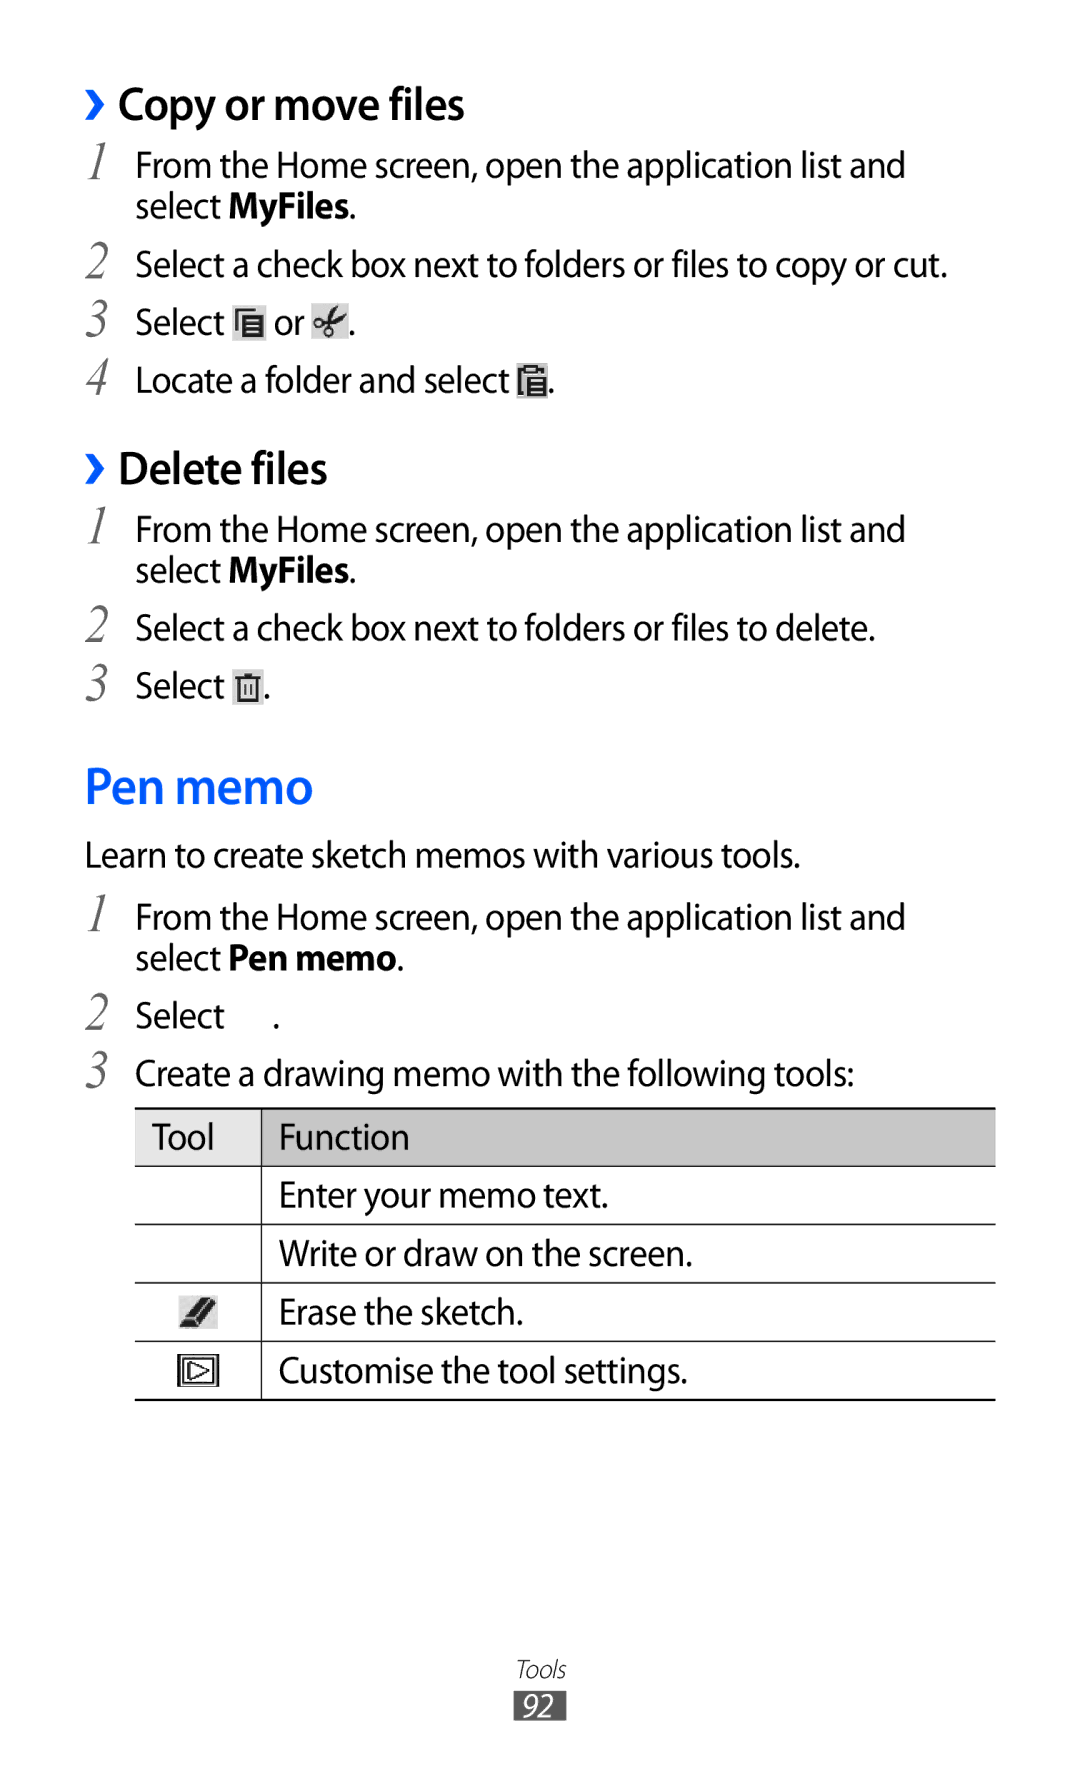 Samsung GT-P7500 user manual Pen memo, Copy or move files, ››Delete files 